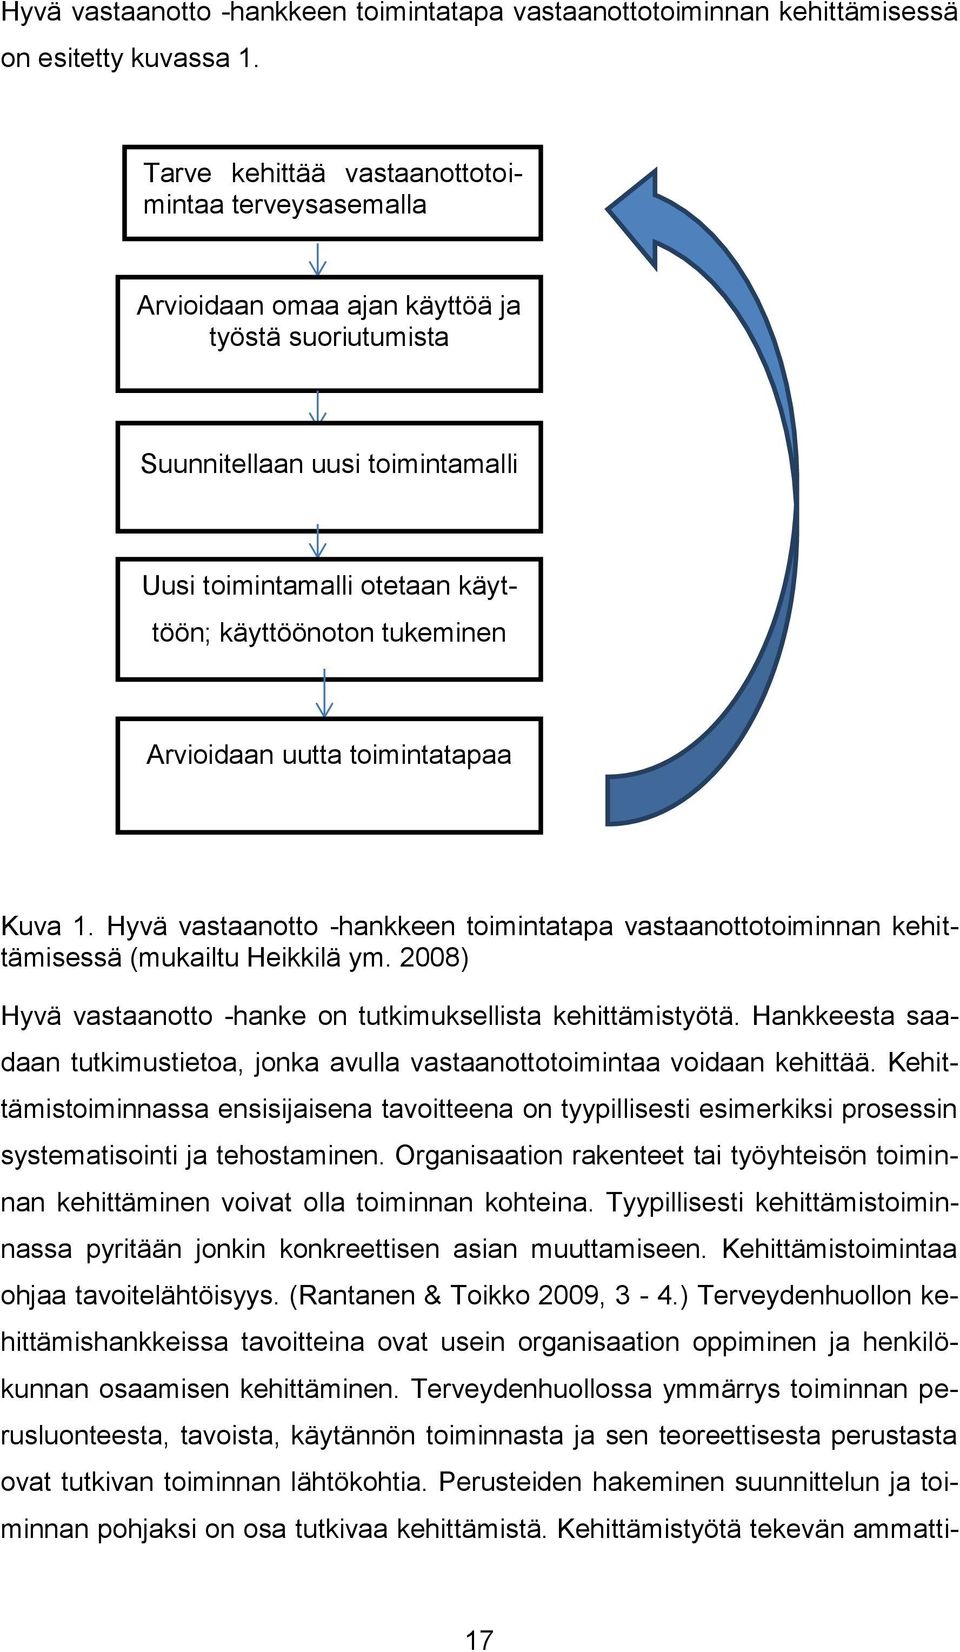 Arvioidaan uutta toimintatapaa Kuva 1. Hyvä vastaanotto -hankkeen toimintatapa vastaanottotoiminnan kehittämisessä (mukailtu Heikkilä ym.